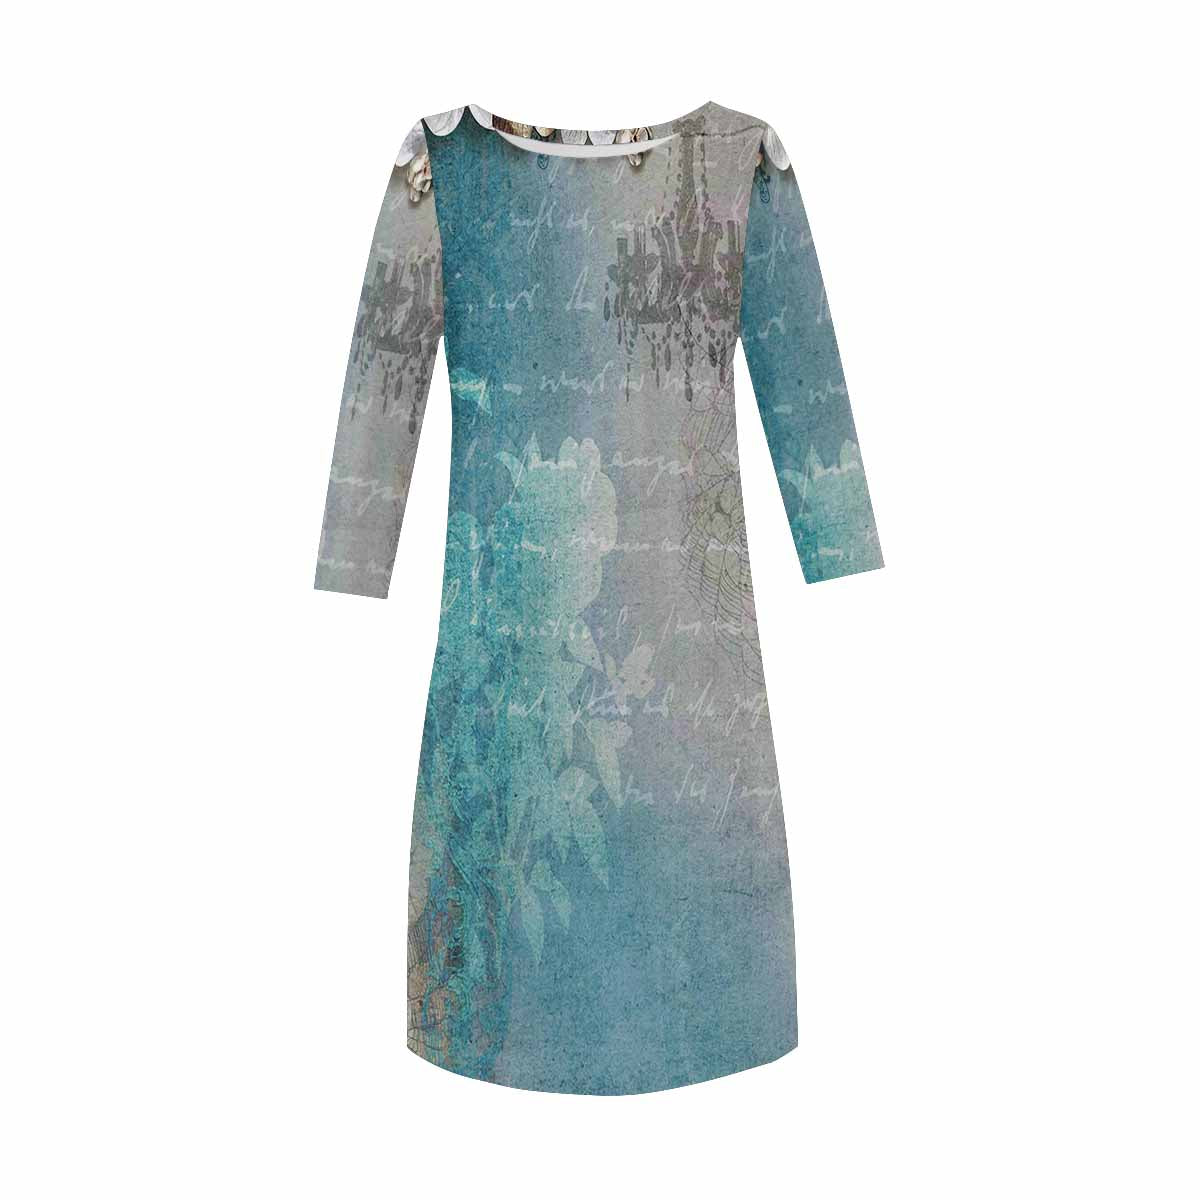 Antique General loose dress, MODEL 29532, design 17